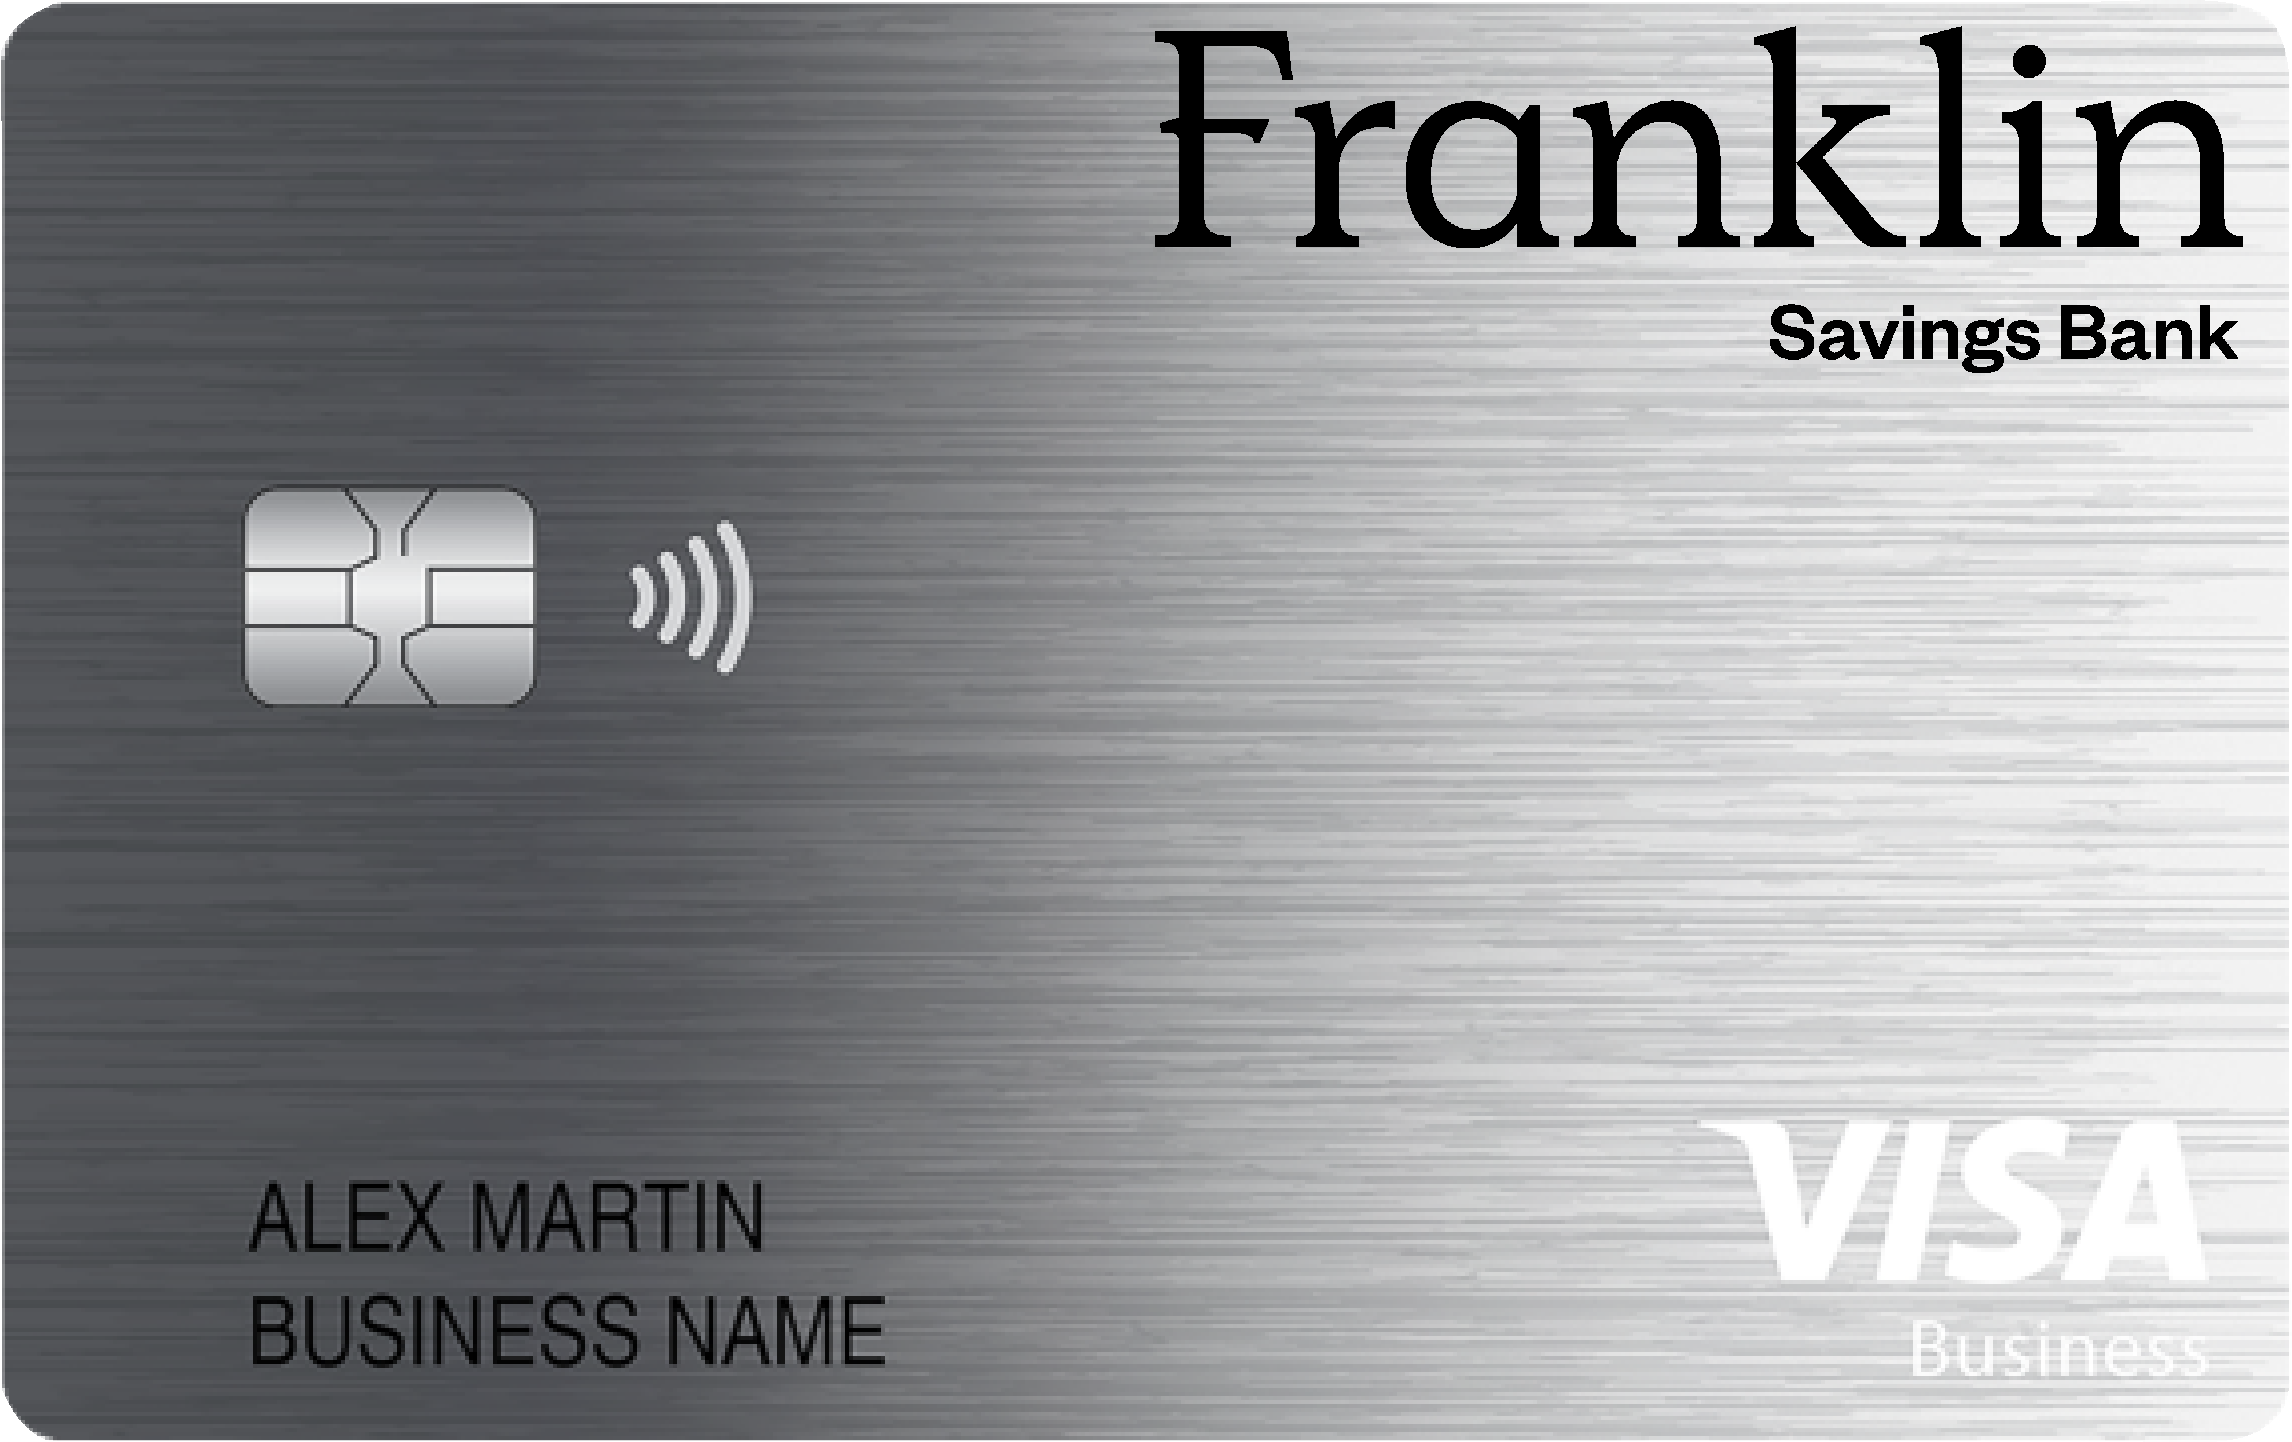 Franklin Savings Bank